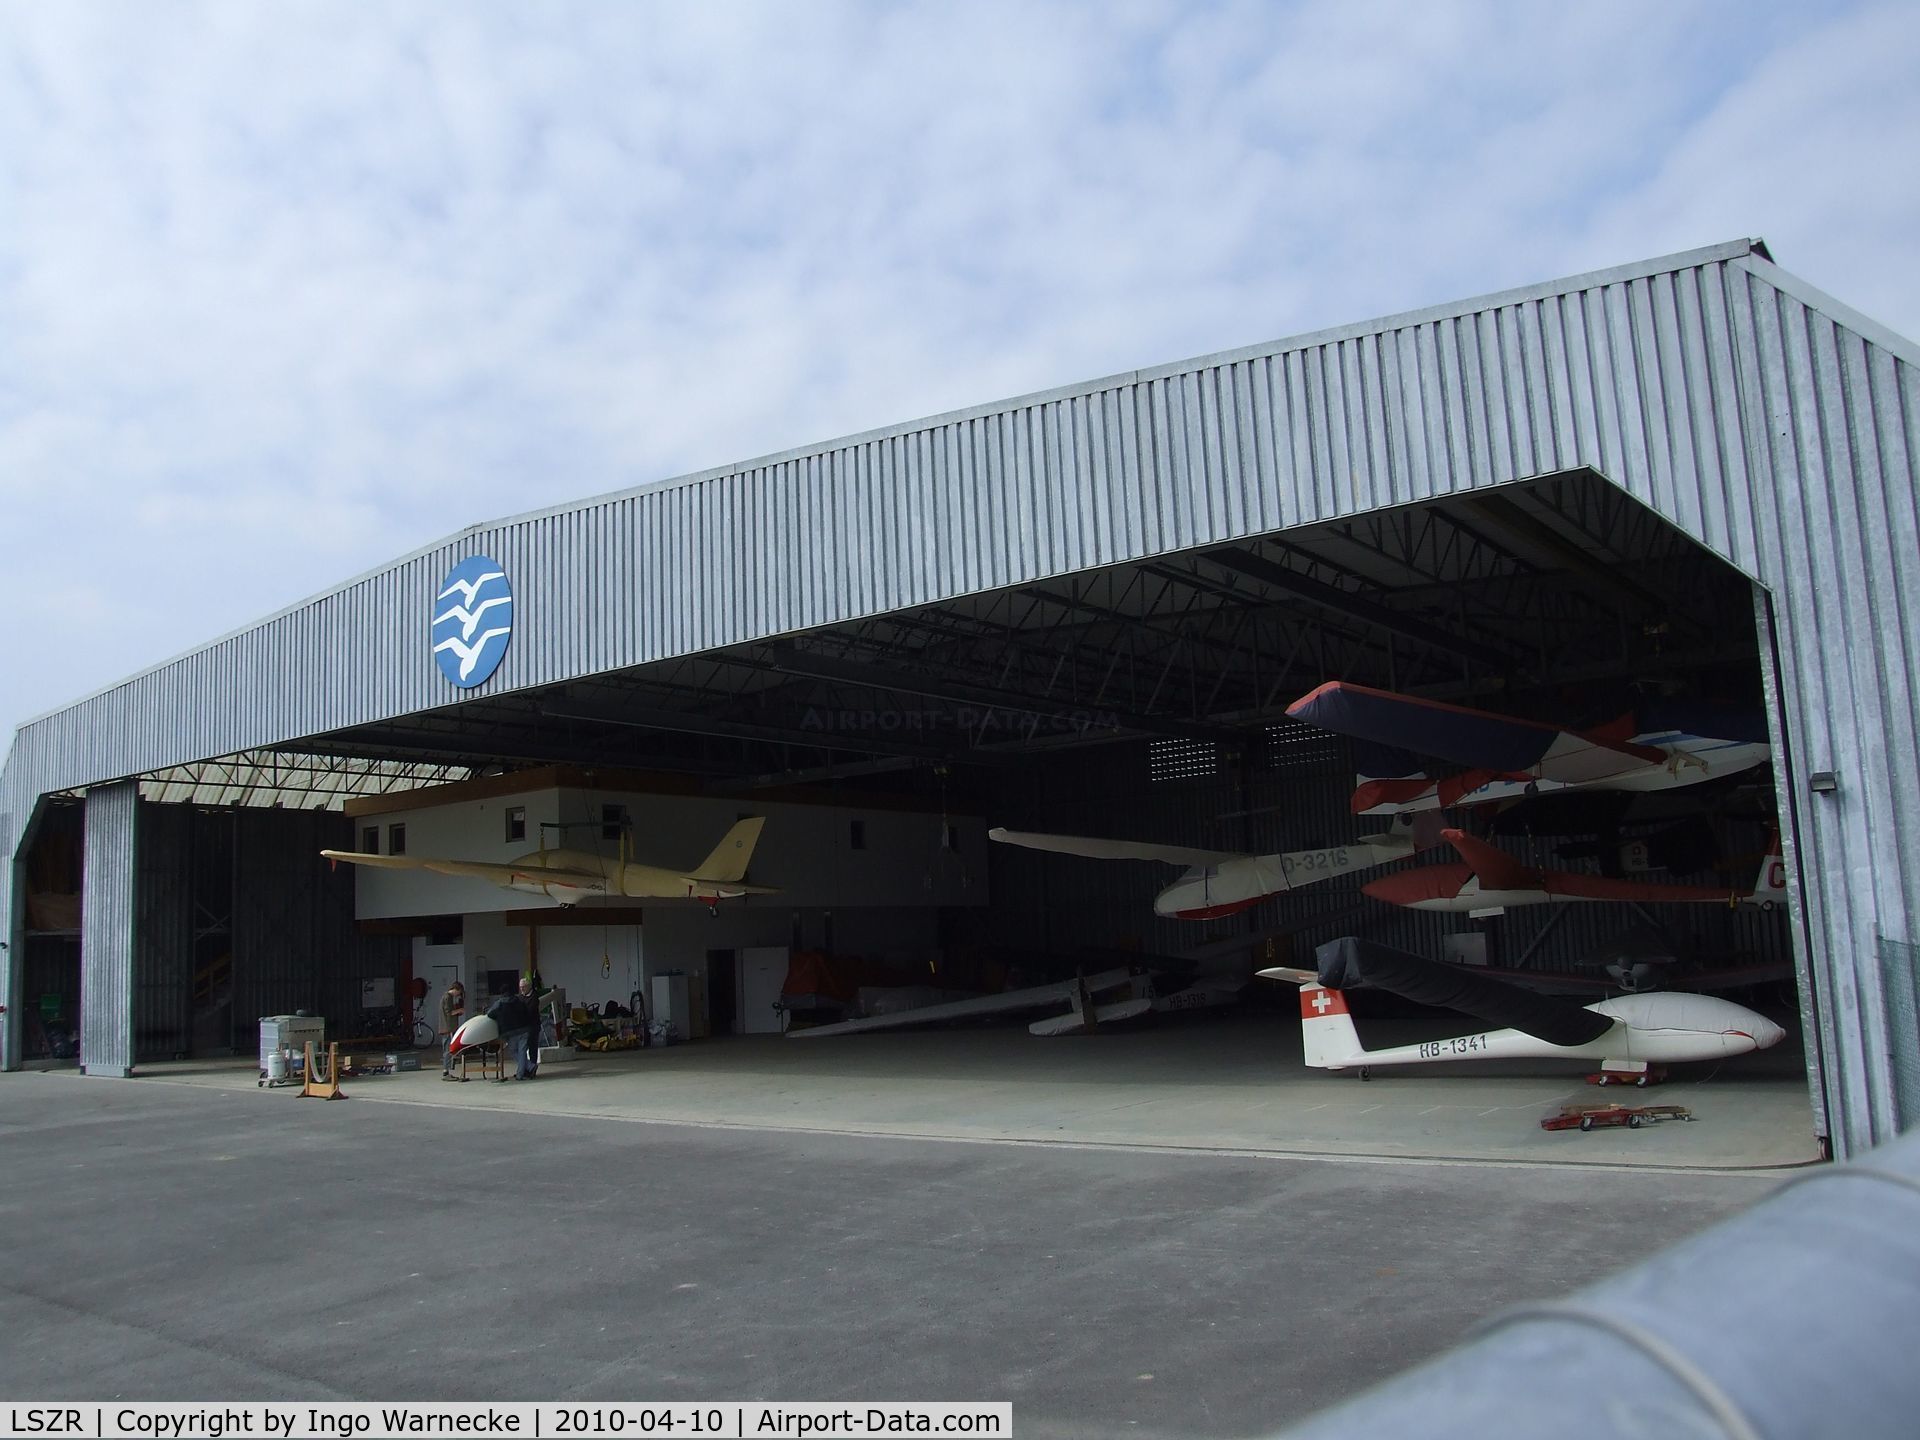 St. Gallen-Altenrhein Airport, Altenrhein Switzerland (LSZR) - The sailplane-hangar at St. Gallen-Altenrhein airfield, seen from the back side